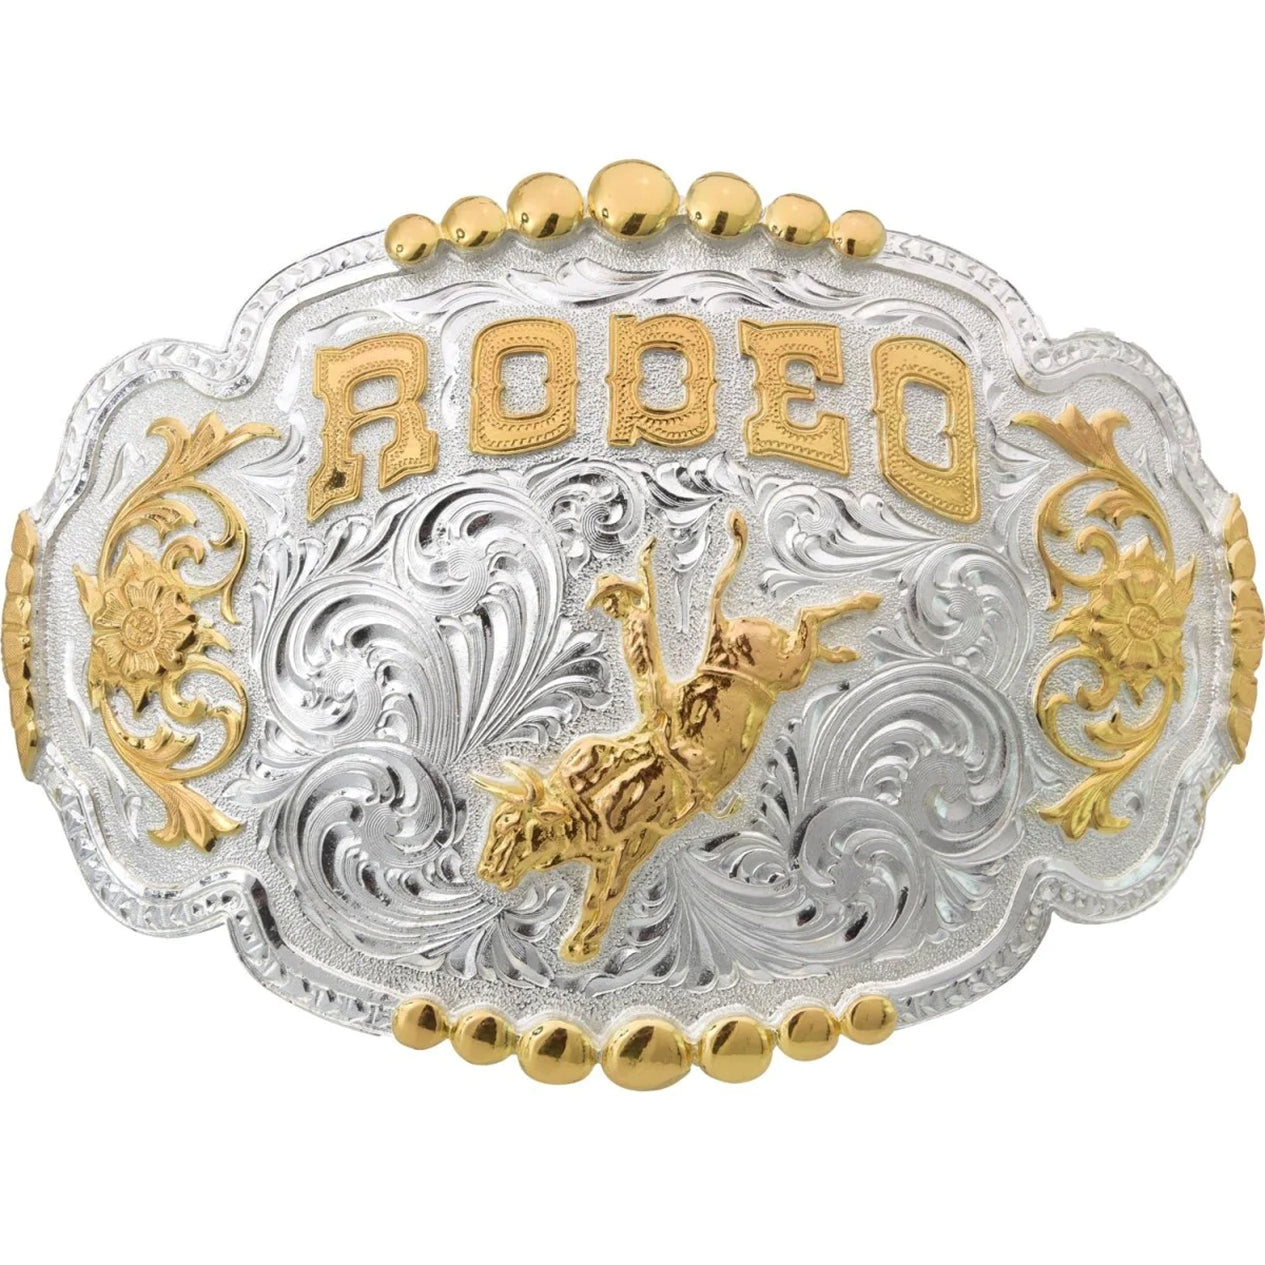 rodeo belt buckles
